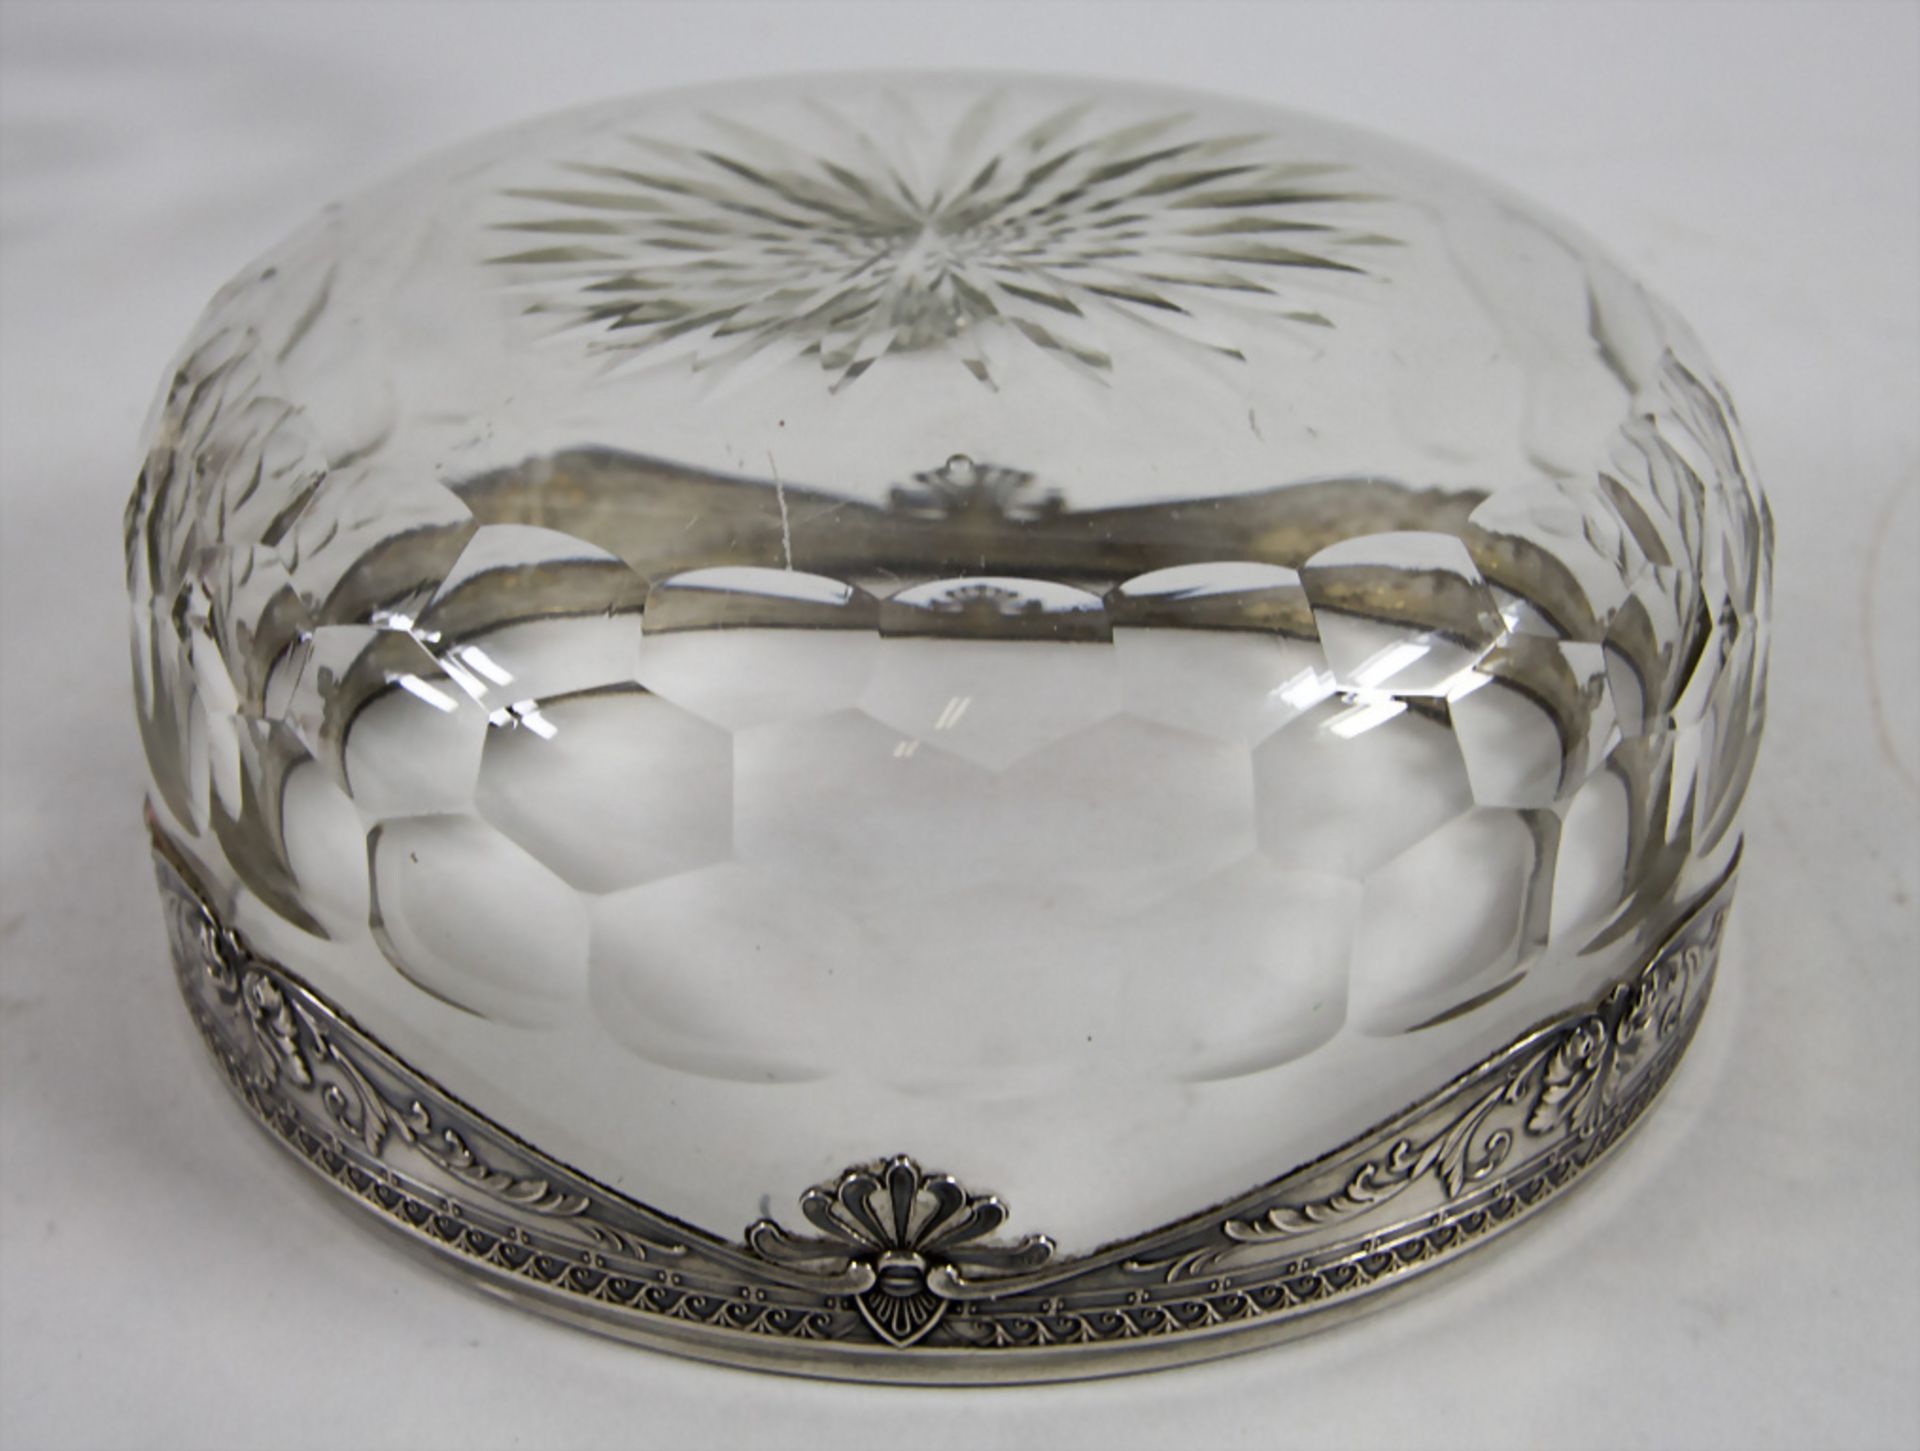 Obstschale / A fruit bowl with silver mount, Société Parisienne d'Orfèvrerie, Paris, 1910-14 - Image 2 of 4